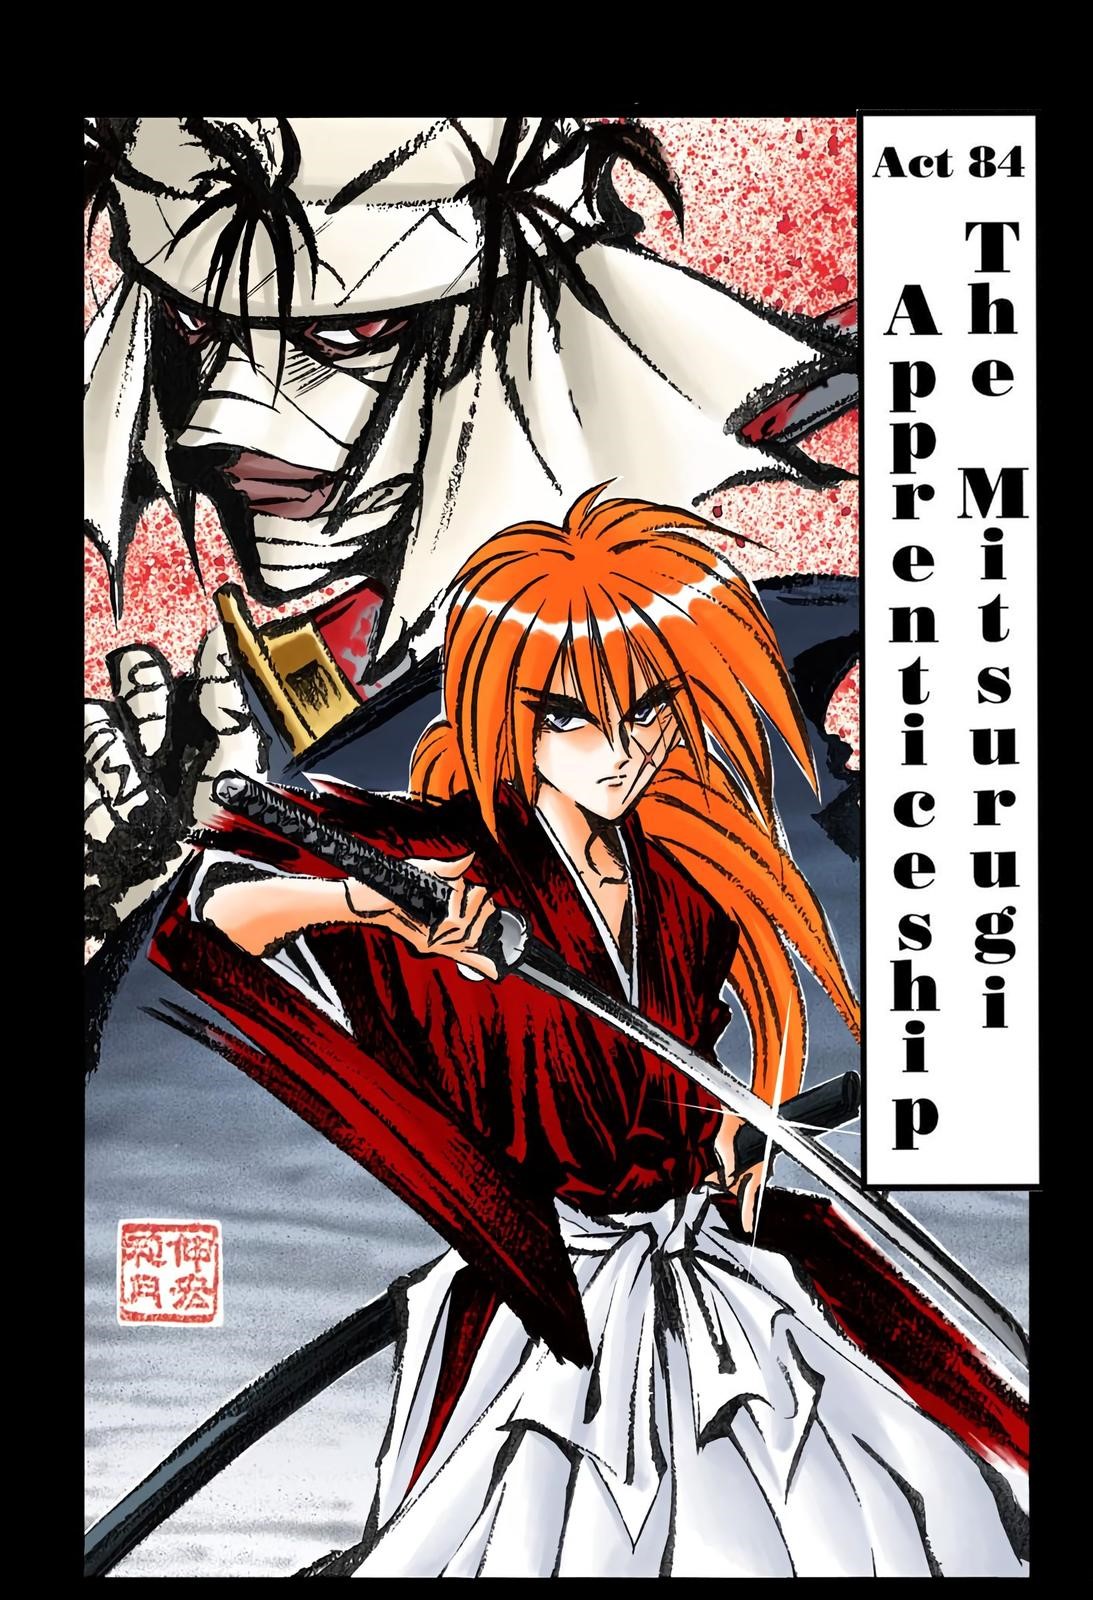 Rurouni Kenshin 1996 to 2023 Comparison